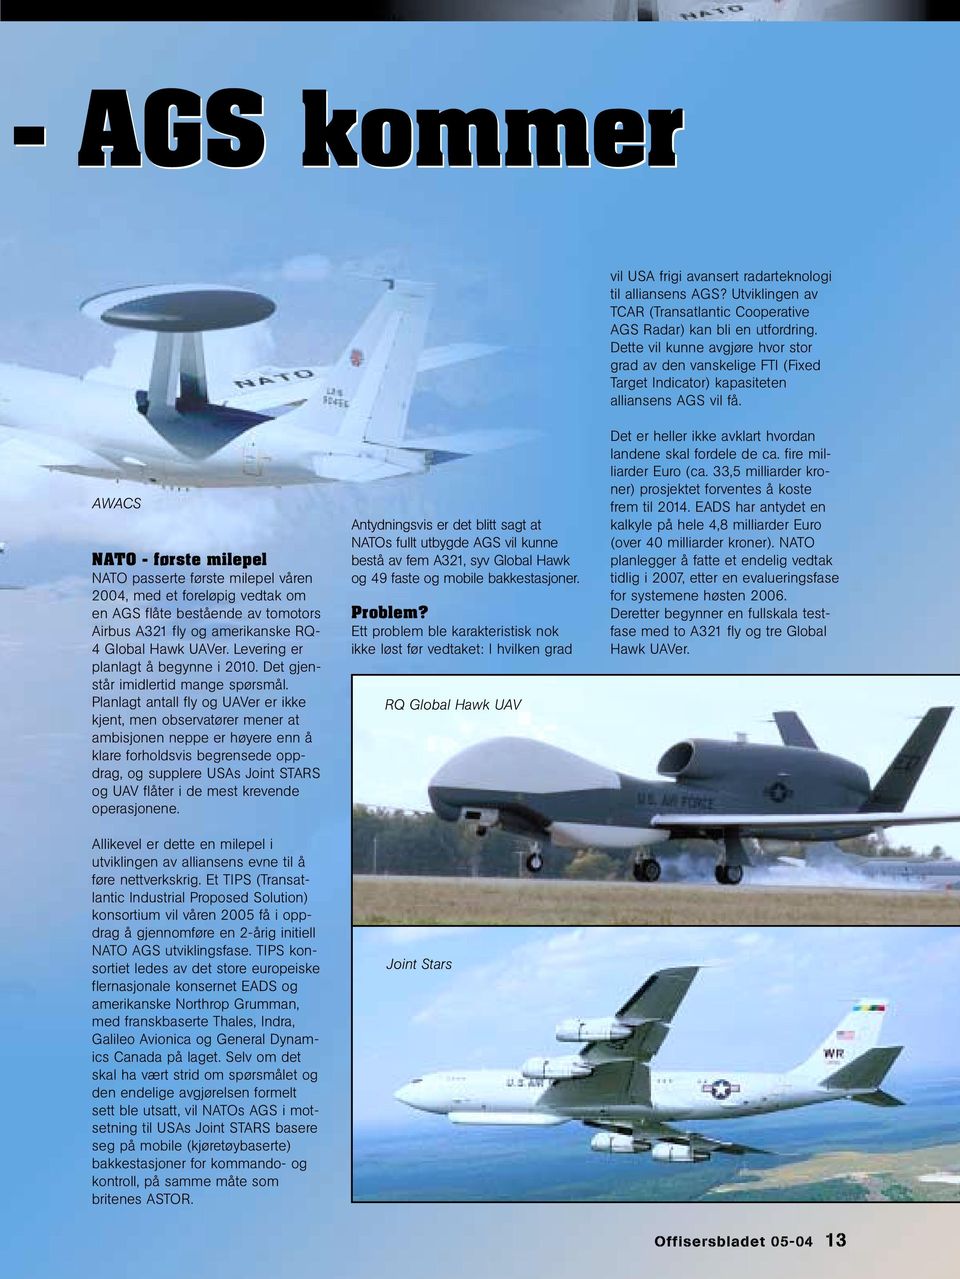 AWACS NATO - første milepel NATO passerte første milepel våren 2004, med et foreløpig vedtak om en AGS flåte bestående av tomotors Airbus A321 fly og amerikanske RQ- 4 Global Hawk UAVer.